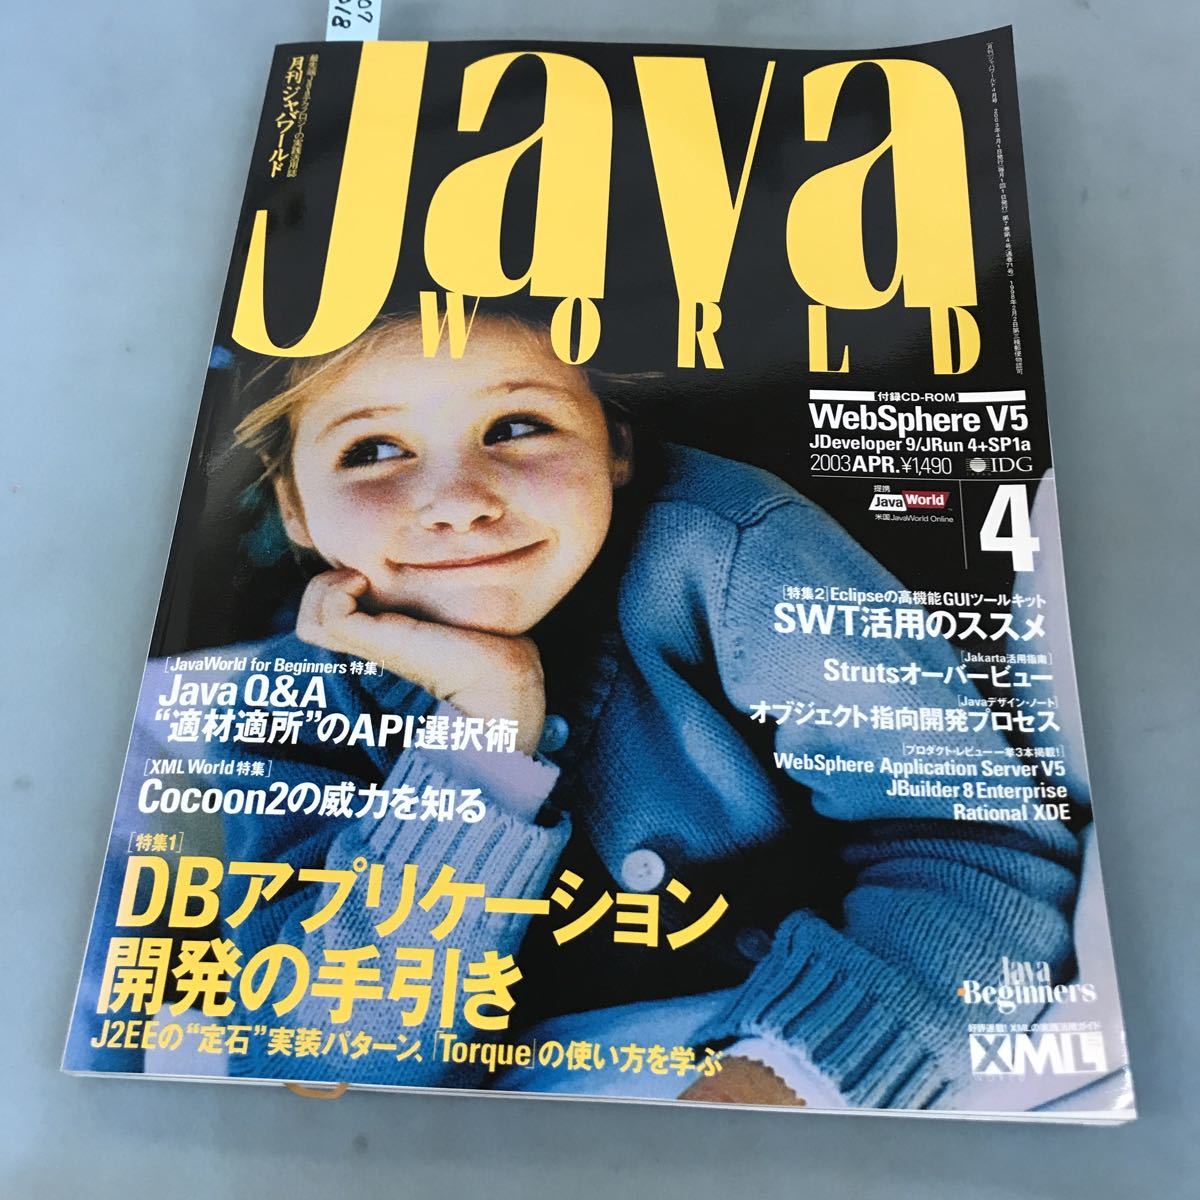 A07-018 [月刊]ジャバワールド 2003 4 [付録CD-ROM]Java2 収録！ 特集 DBアプリケーション開発の手引き/Java Q&A/SWT IDGジャパンのサムネイル